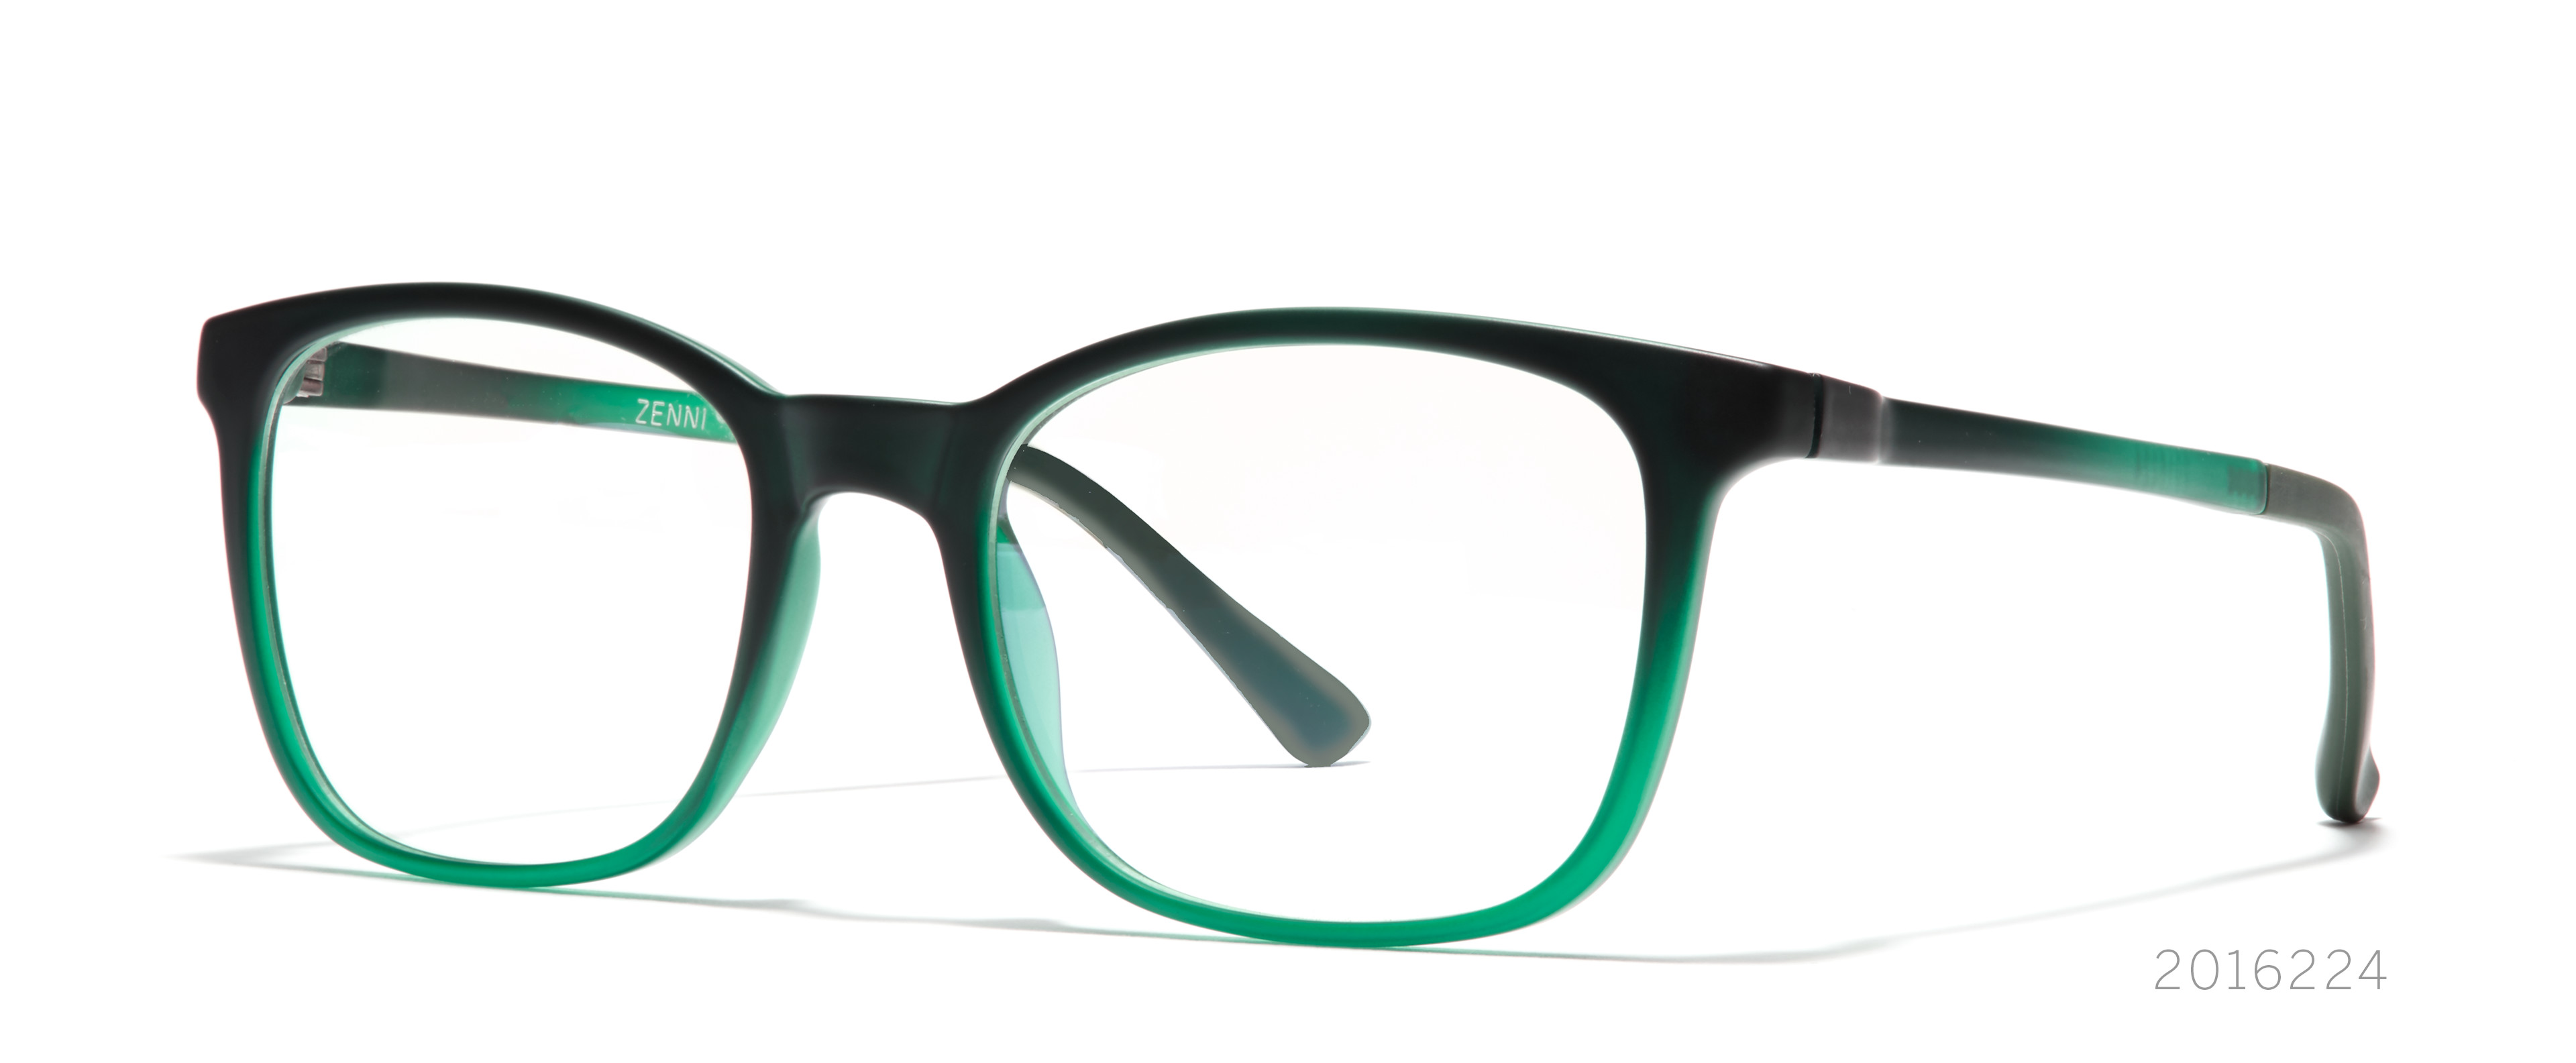 Ladins Profili Stylish Designer Eyeglass Frame New 